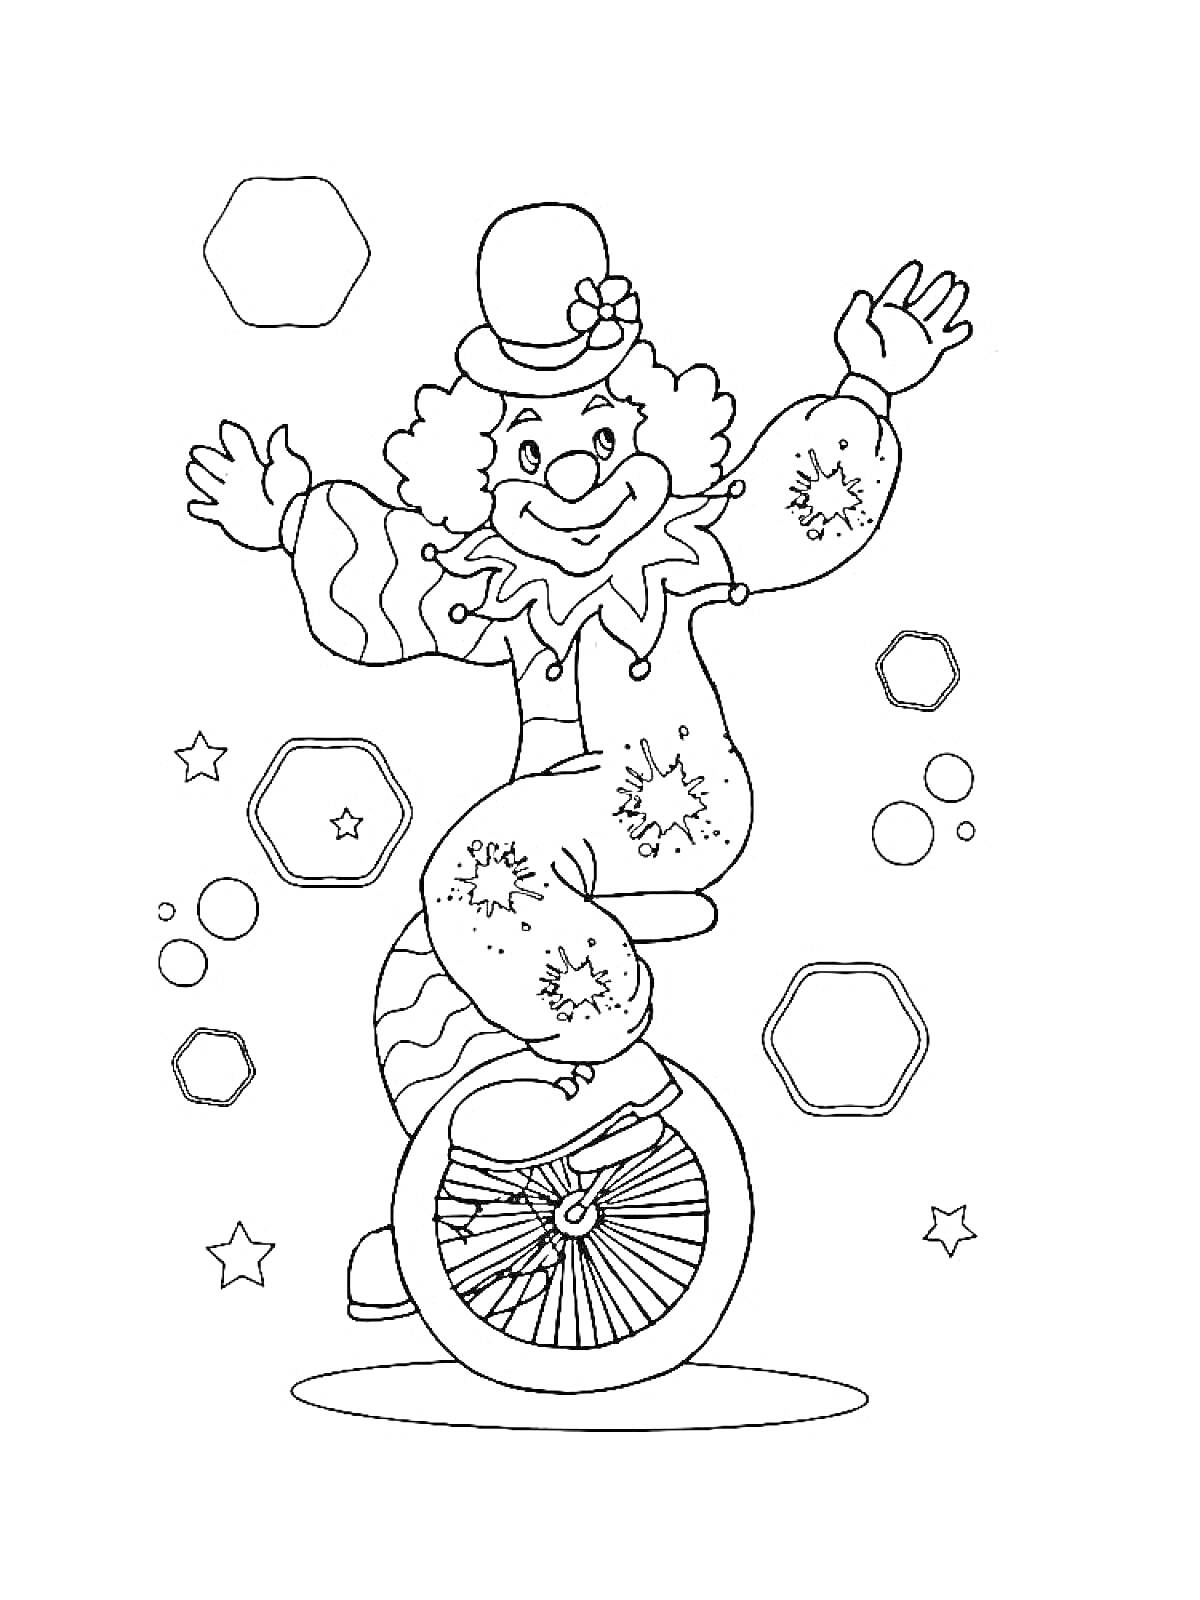 Раскраска Клоун на одноколесном велосипеде в шляпе с цветком, шестиугольники, звезды и круги